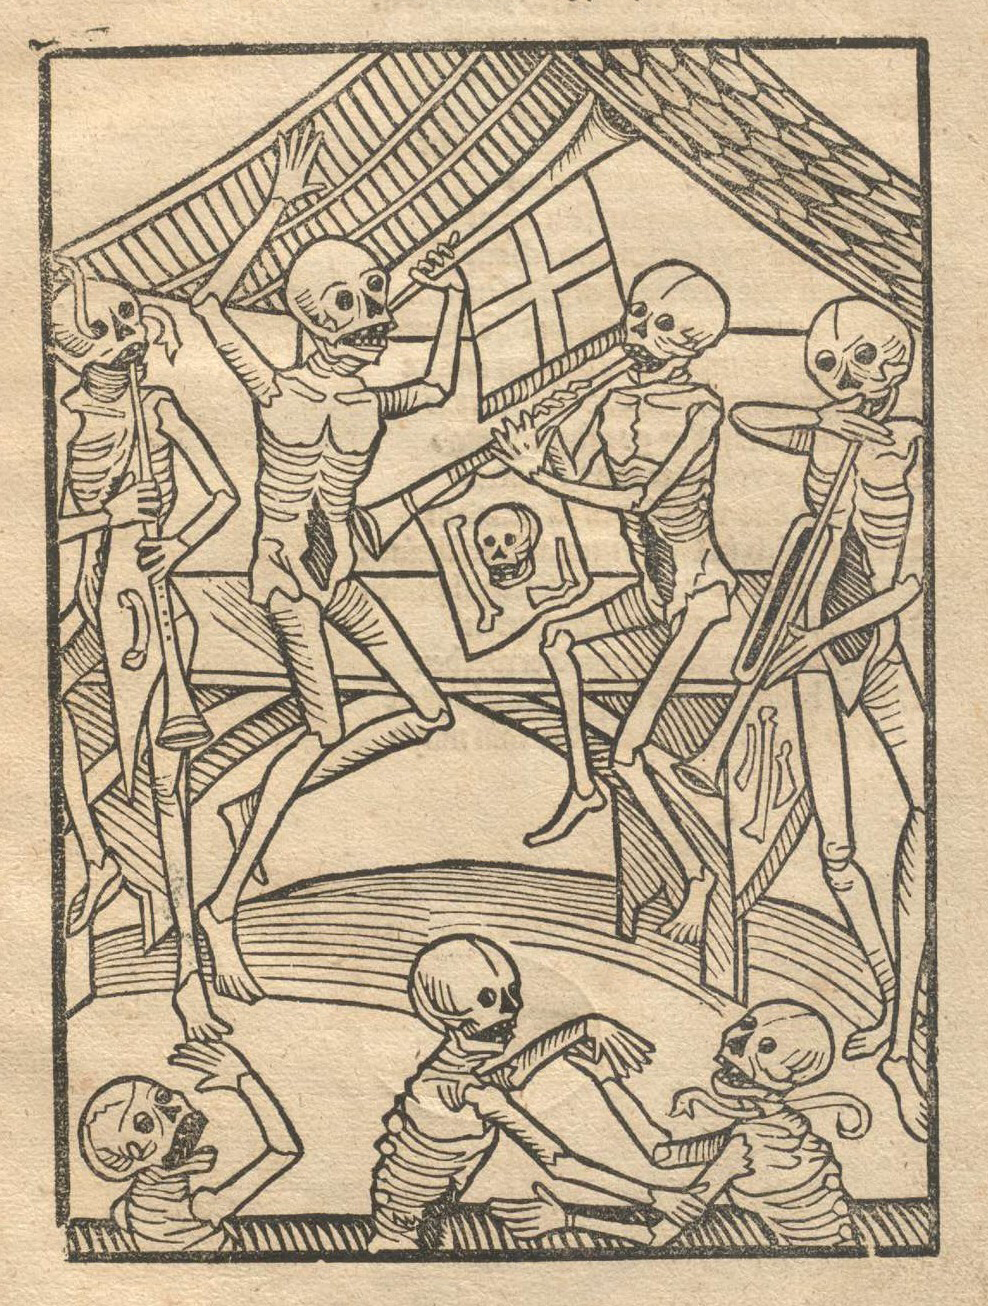 Третье издание «Der Doten dantz» (1520)